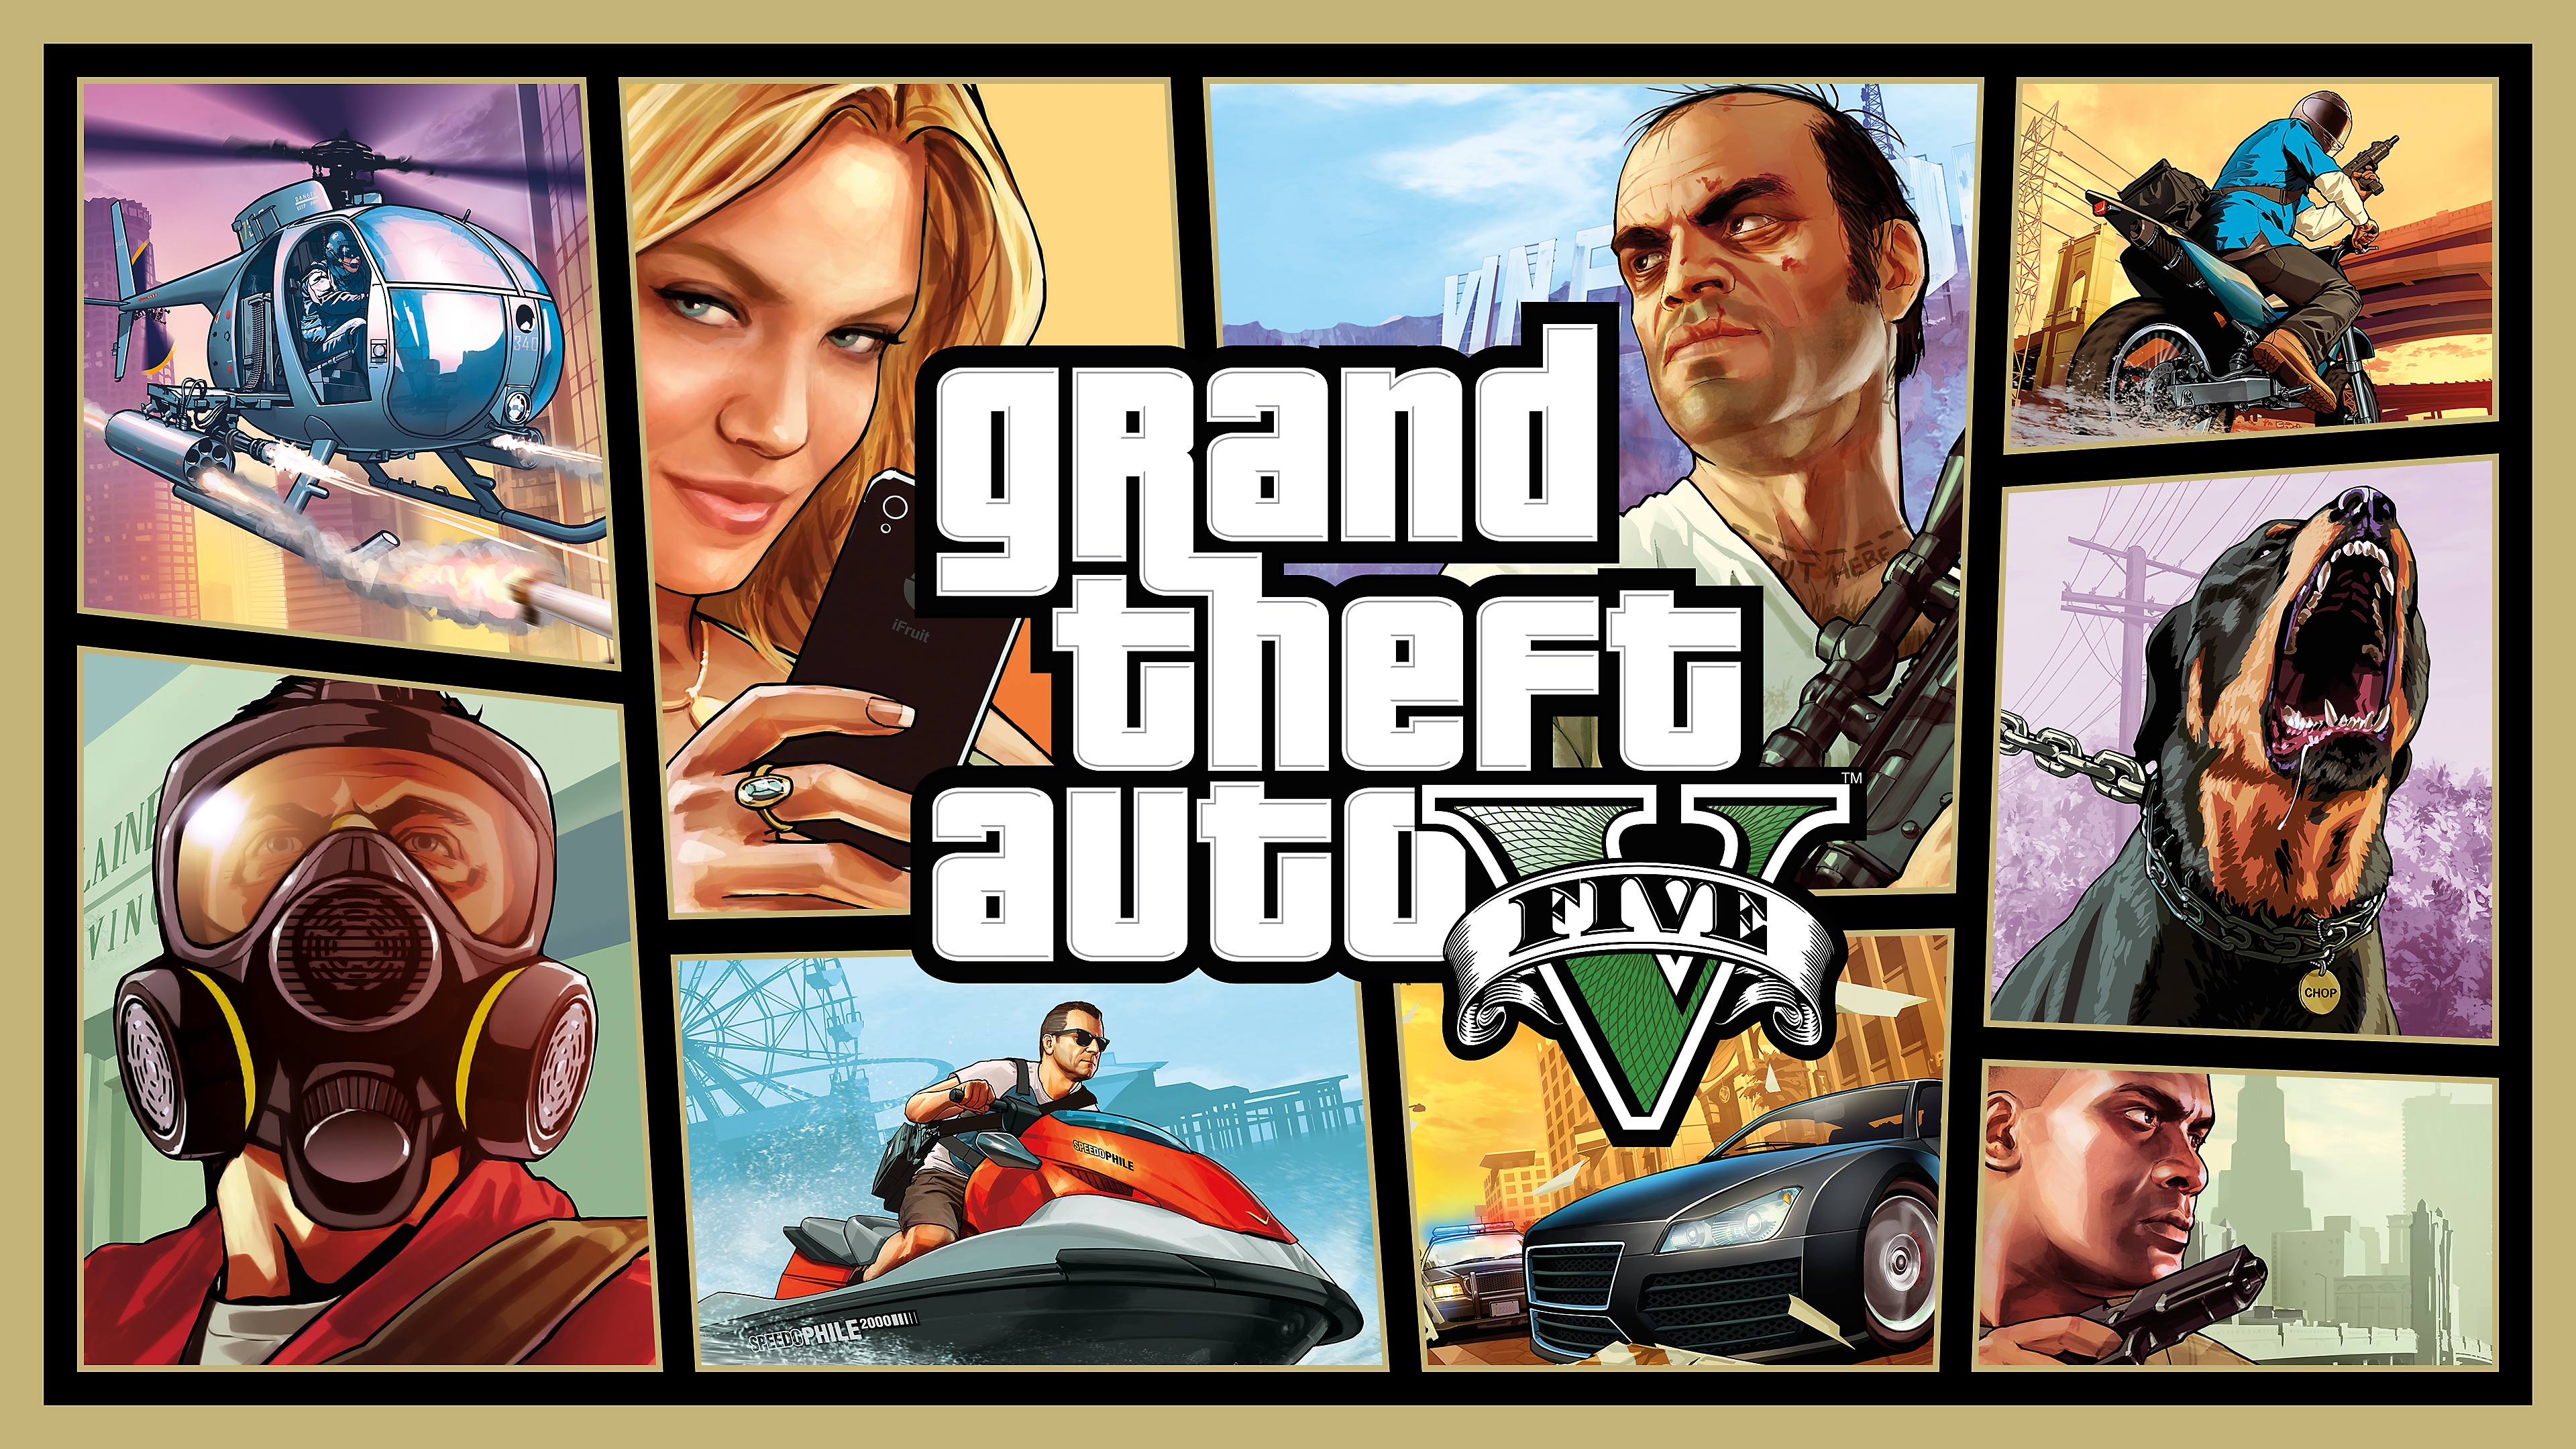 GTAV-sztorimód fő grafika: montázs a főszereplőkkel, egy ugató rottweilerrel, egy jetskivel, autókkal és egy helikopterrel